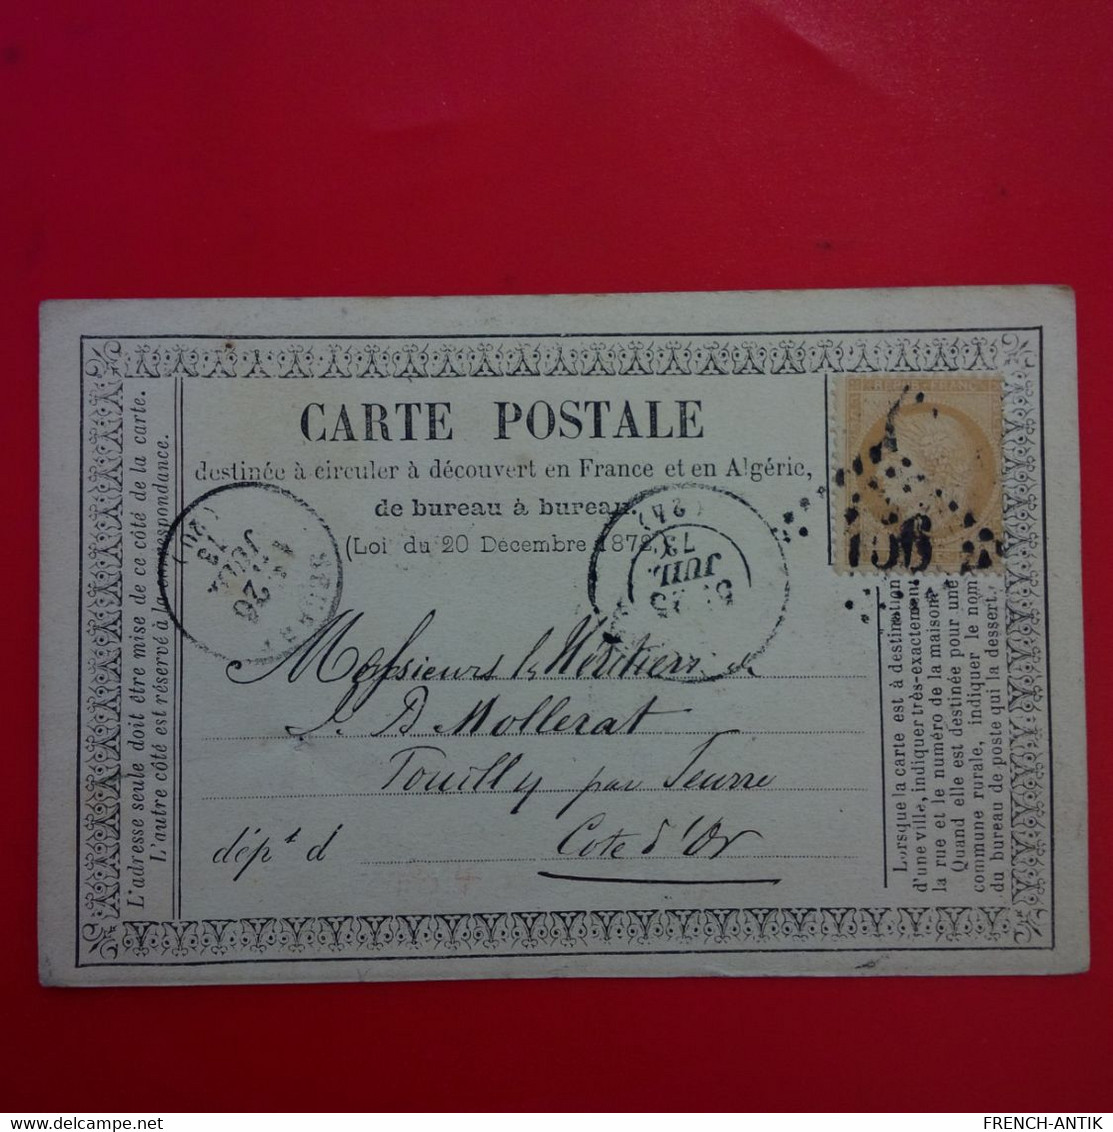 CARTE POSTALE TIMBRE BISTRE 1873 MULHOUSE POUR COTE D OR CACHET GROS CHIFFRE - 1871-1875 Ceres